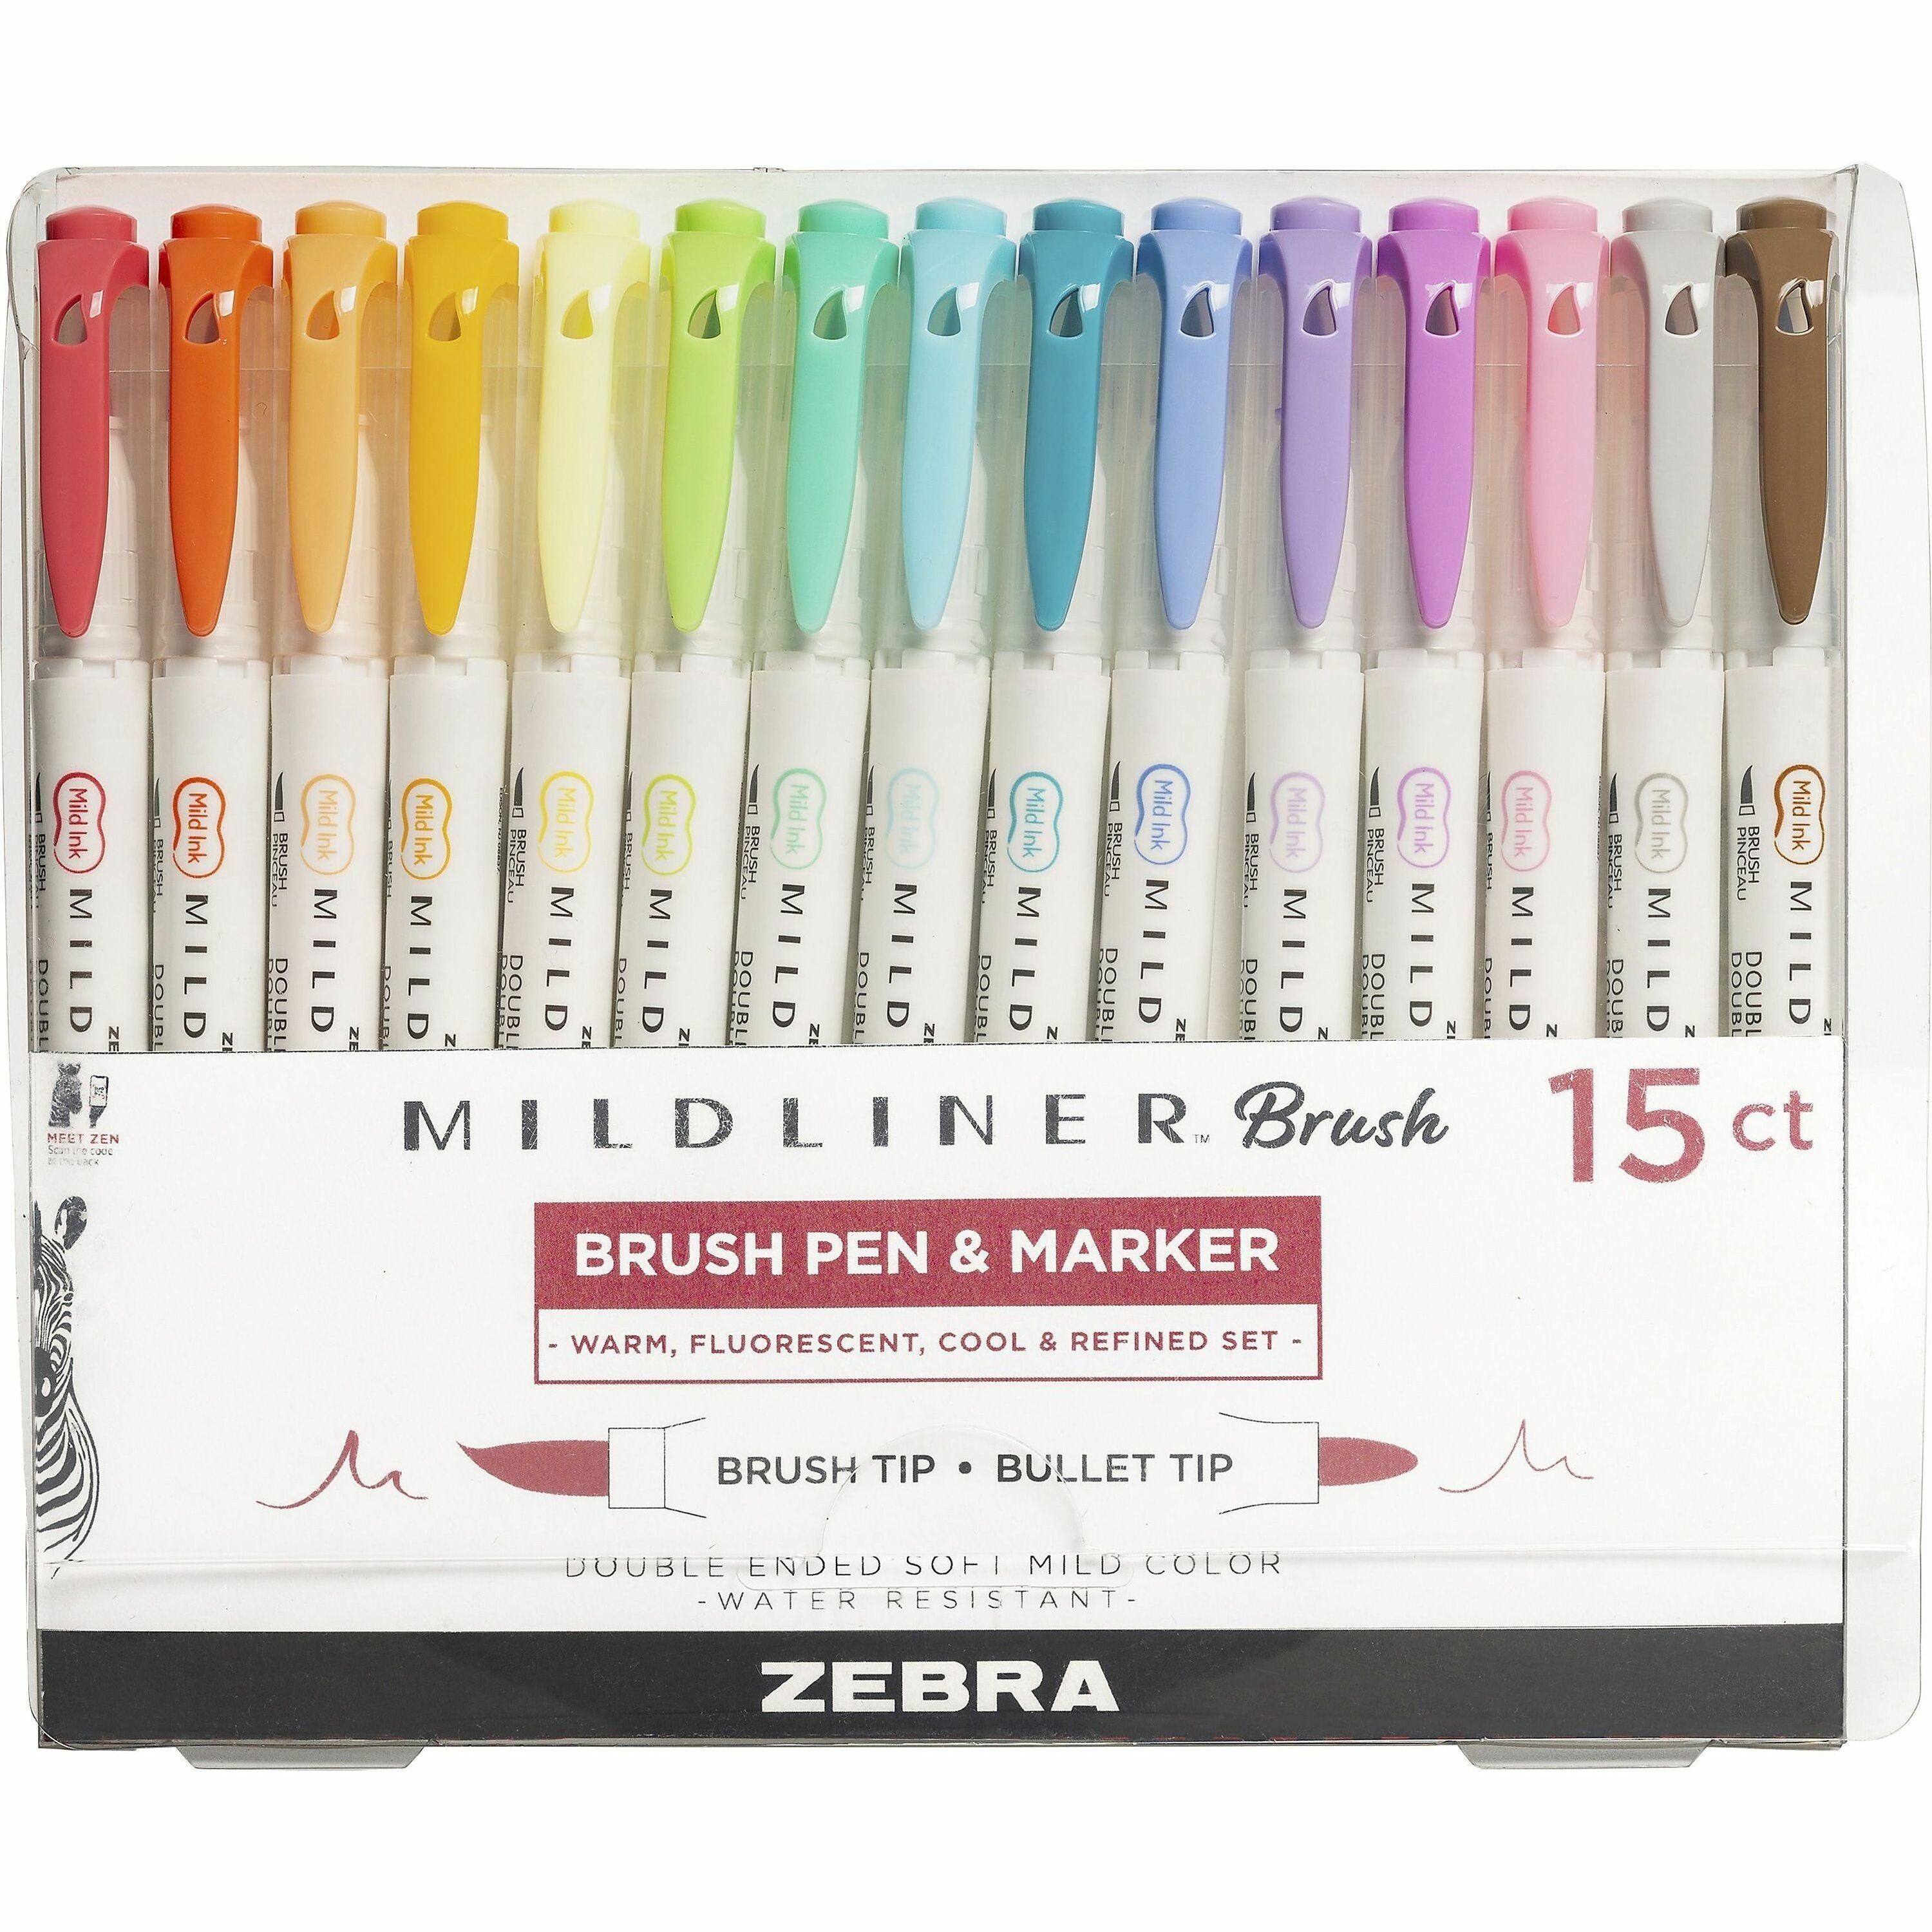 zebra-mildliner-dual-ended-brush-pen-&-marker-set-medium-pen-point-fine-marker-point-brush-pen-point-style-bullet-marker-point-style-assorted-pigment-based-ink-white-barrel-15-pack_zeb79115 - 1